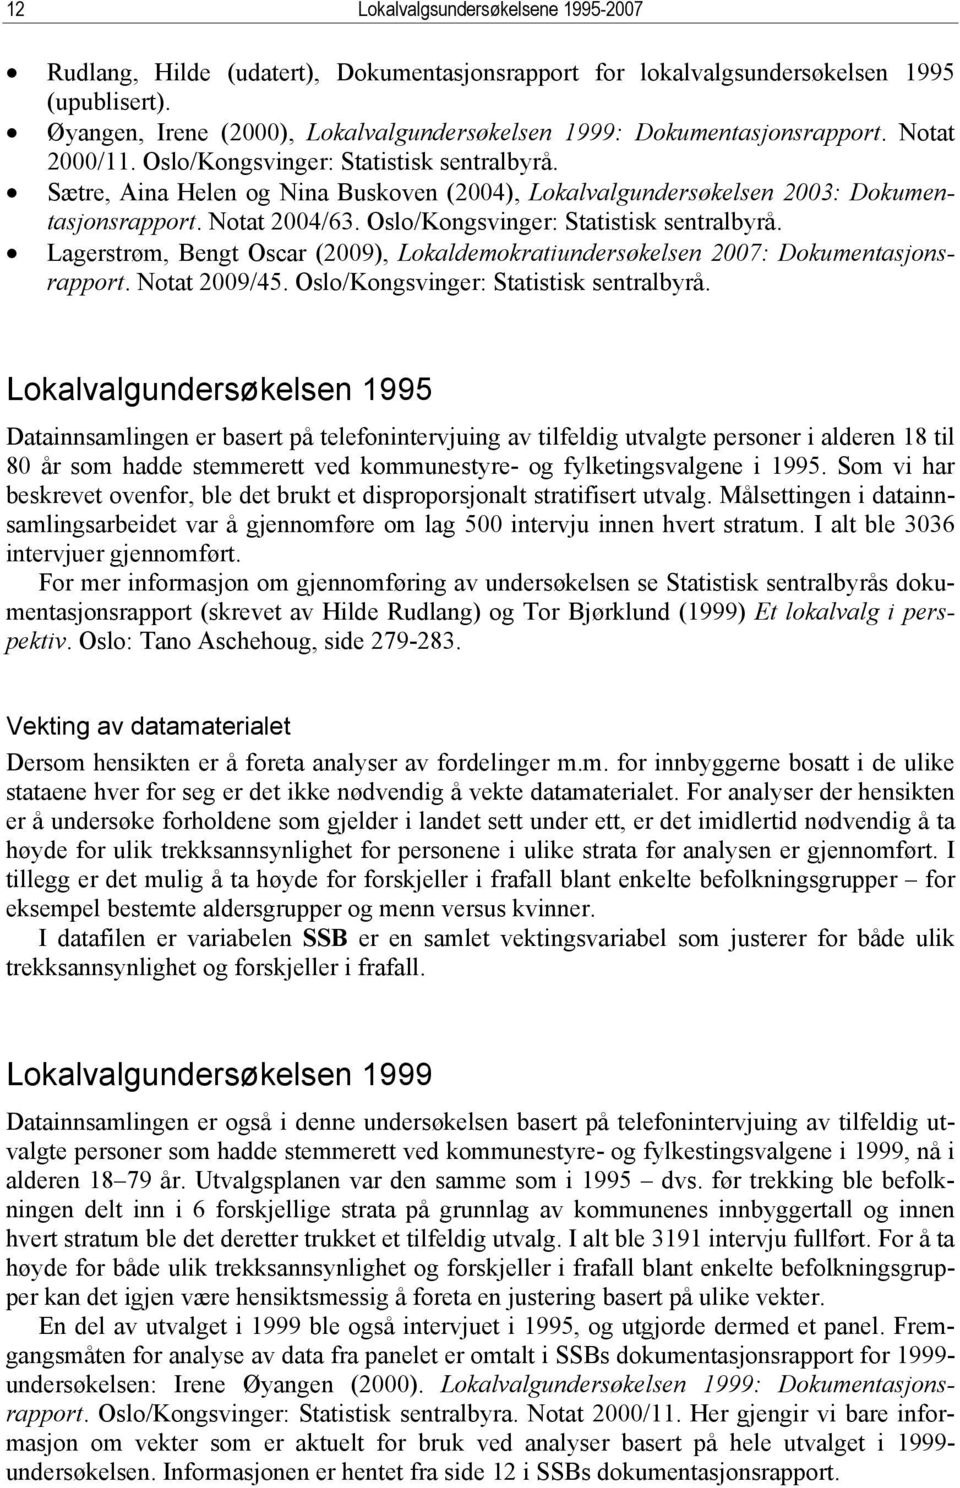 Sætre, Aina Helen og Nina Buskoven (2004), Lokalvalgundersøkelsen 2003: Dokumentasjonsrapport. Notat 2004/63. Oslo/Kongsvinger: Statistisk sentralbyrå.